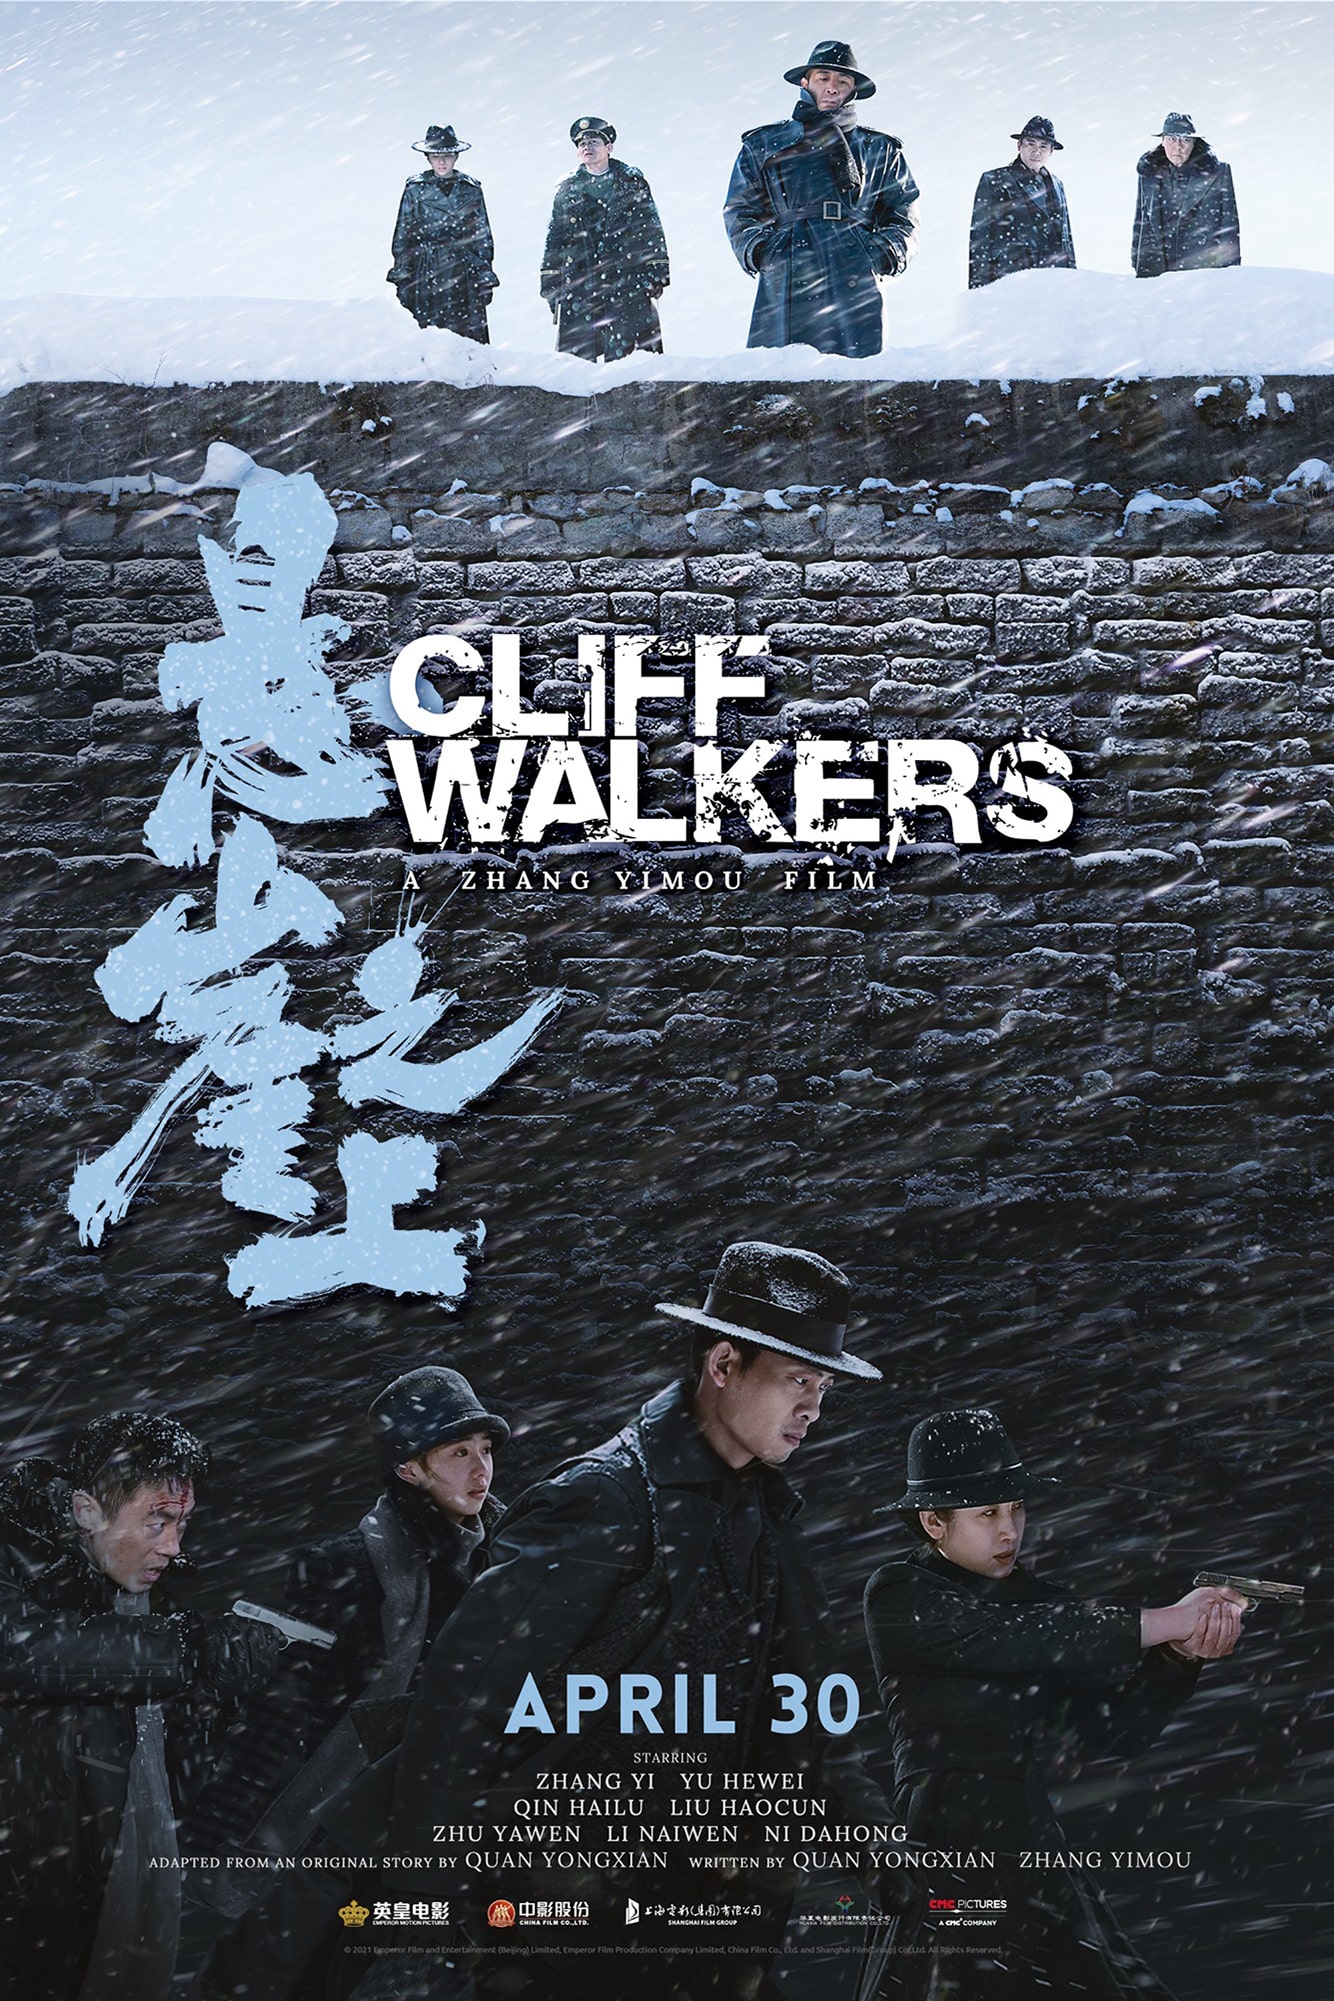 کلیف واکرز (Cliff Walkers)